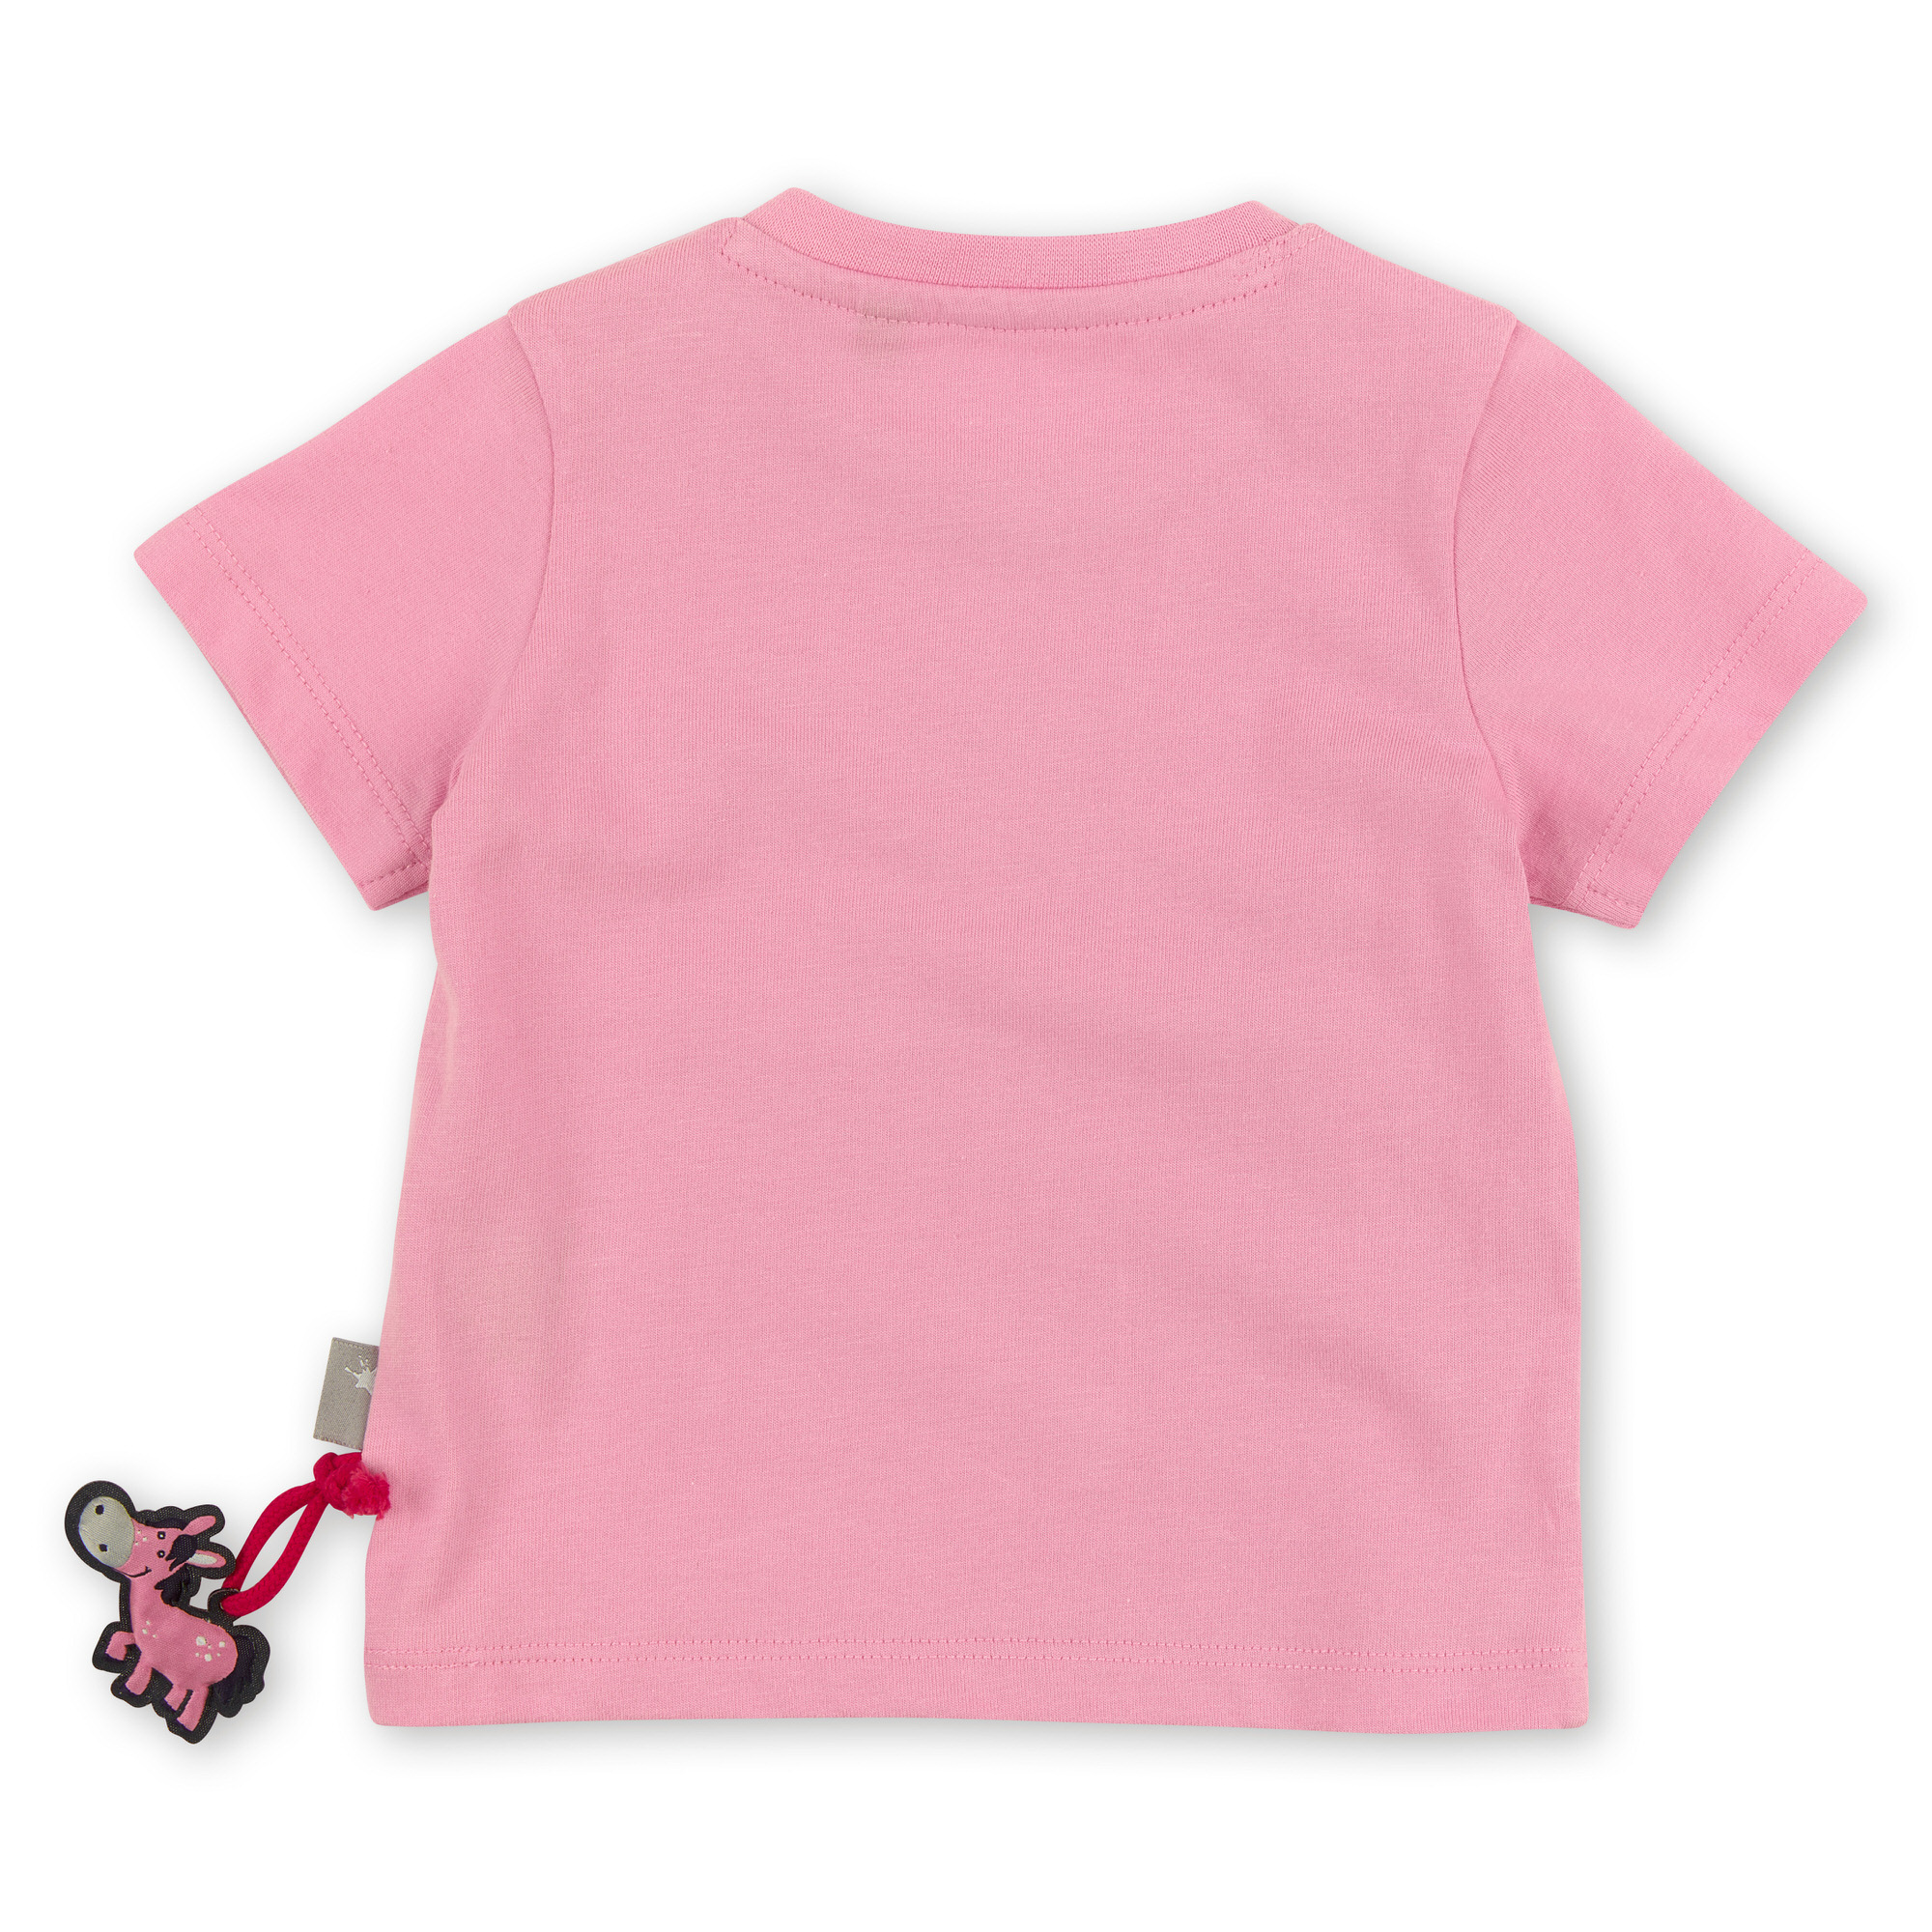 Rosa Baby T-Shirt mit Herzchen Stickerei